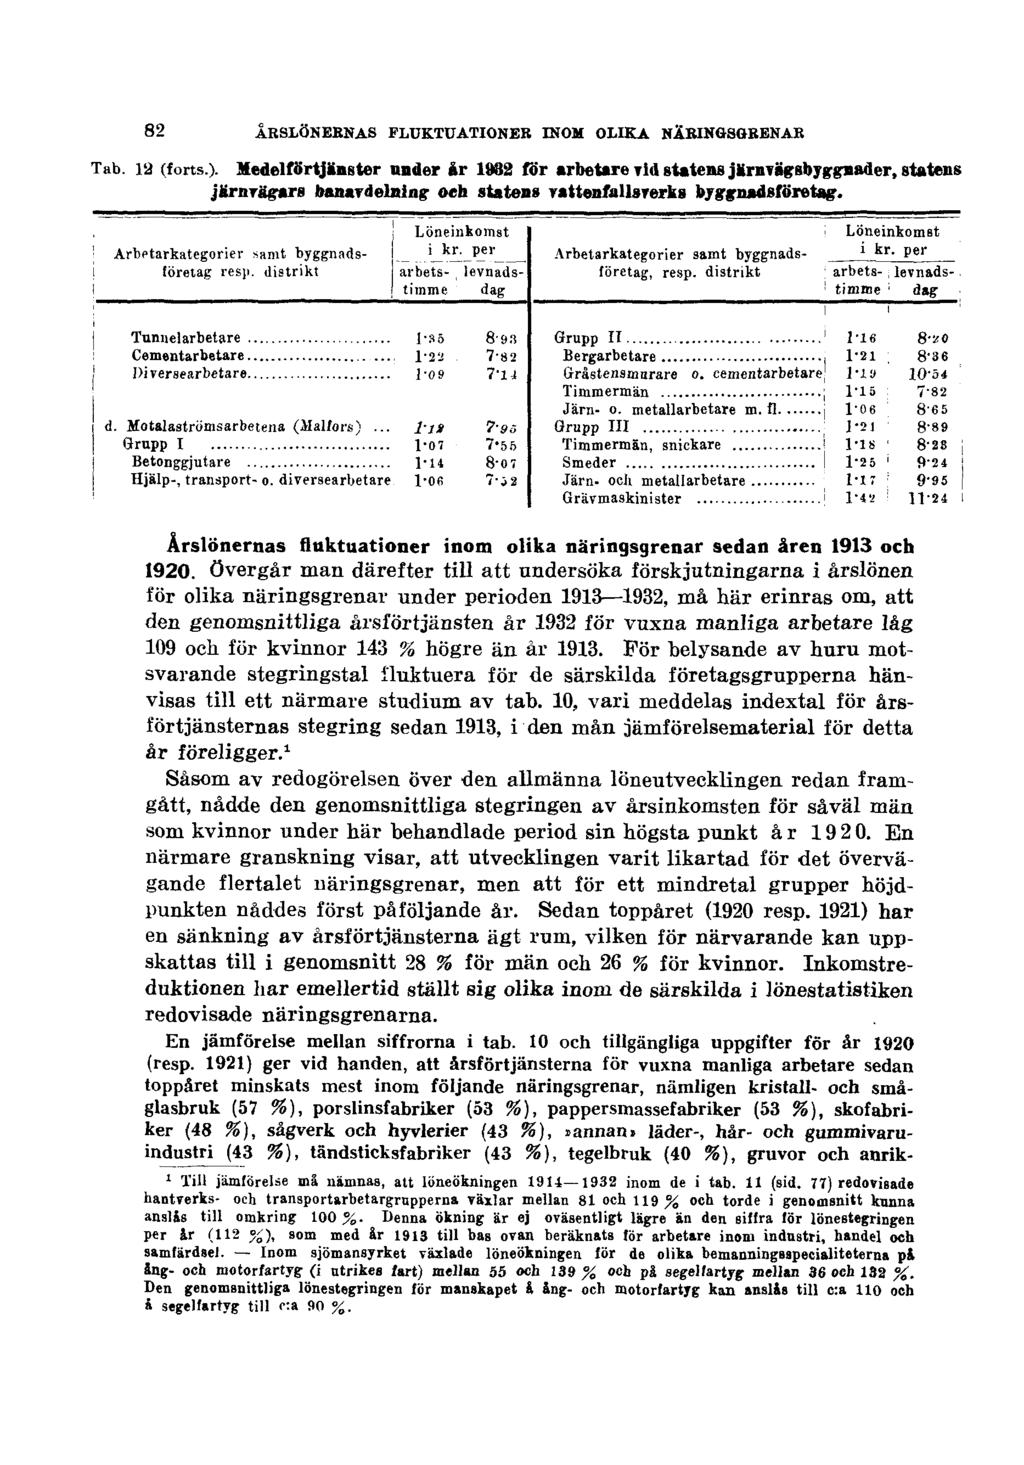 82 ÅRSLÖNERNAS FLUKTUATIONER INOM OLIKA NÄRINGSGRENAR Årslönernas fluktuationer inom olika näringsgrenar sedan åren 1913 och 1920.